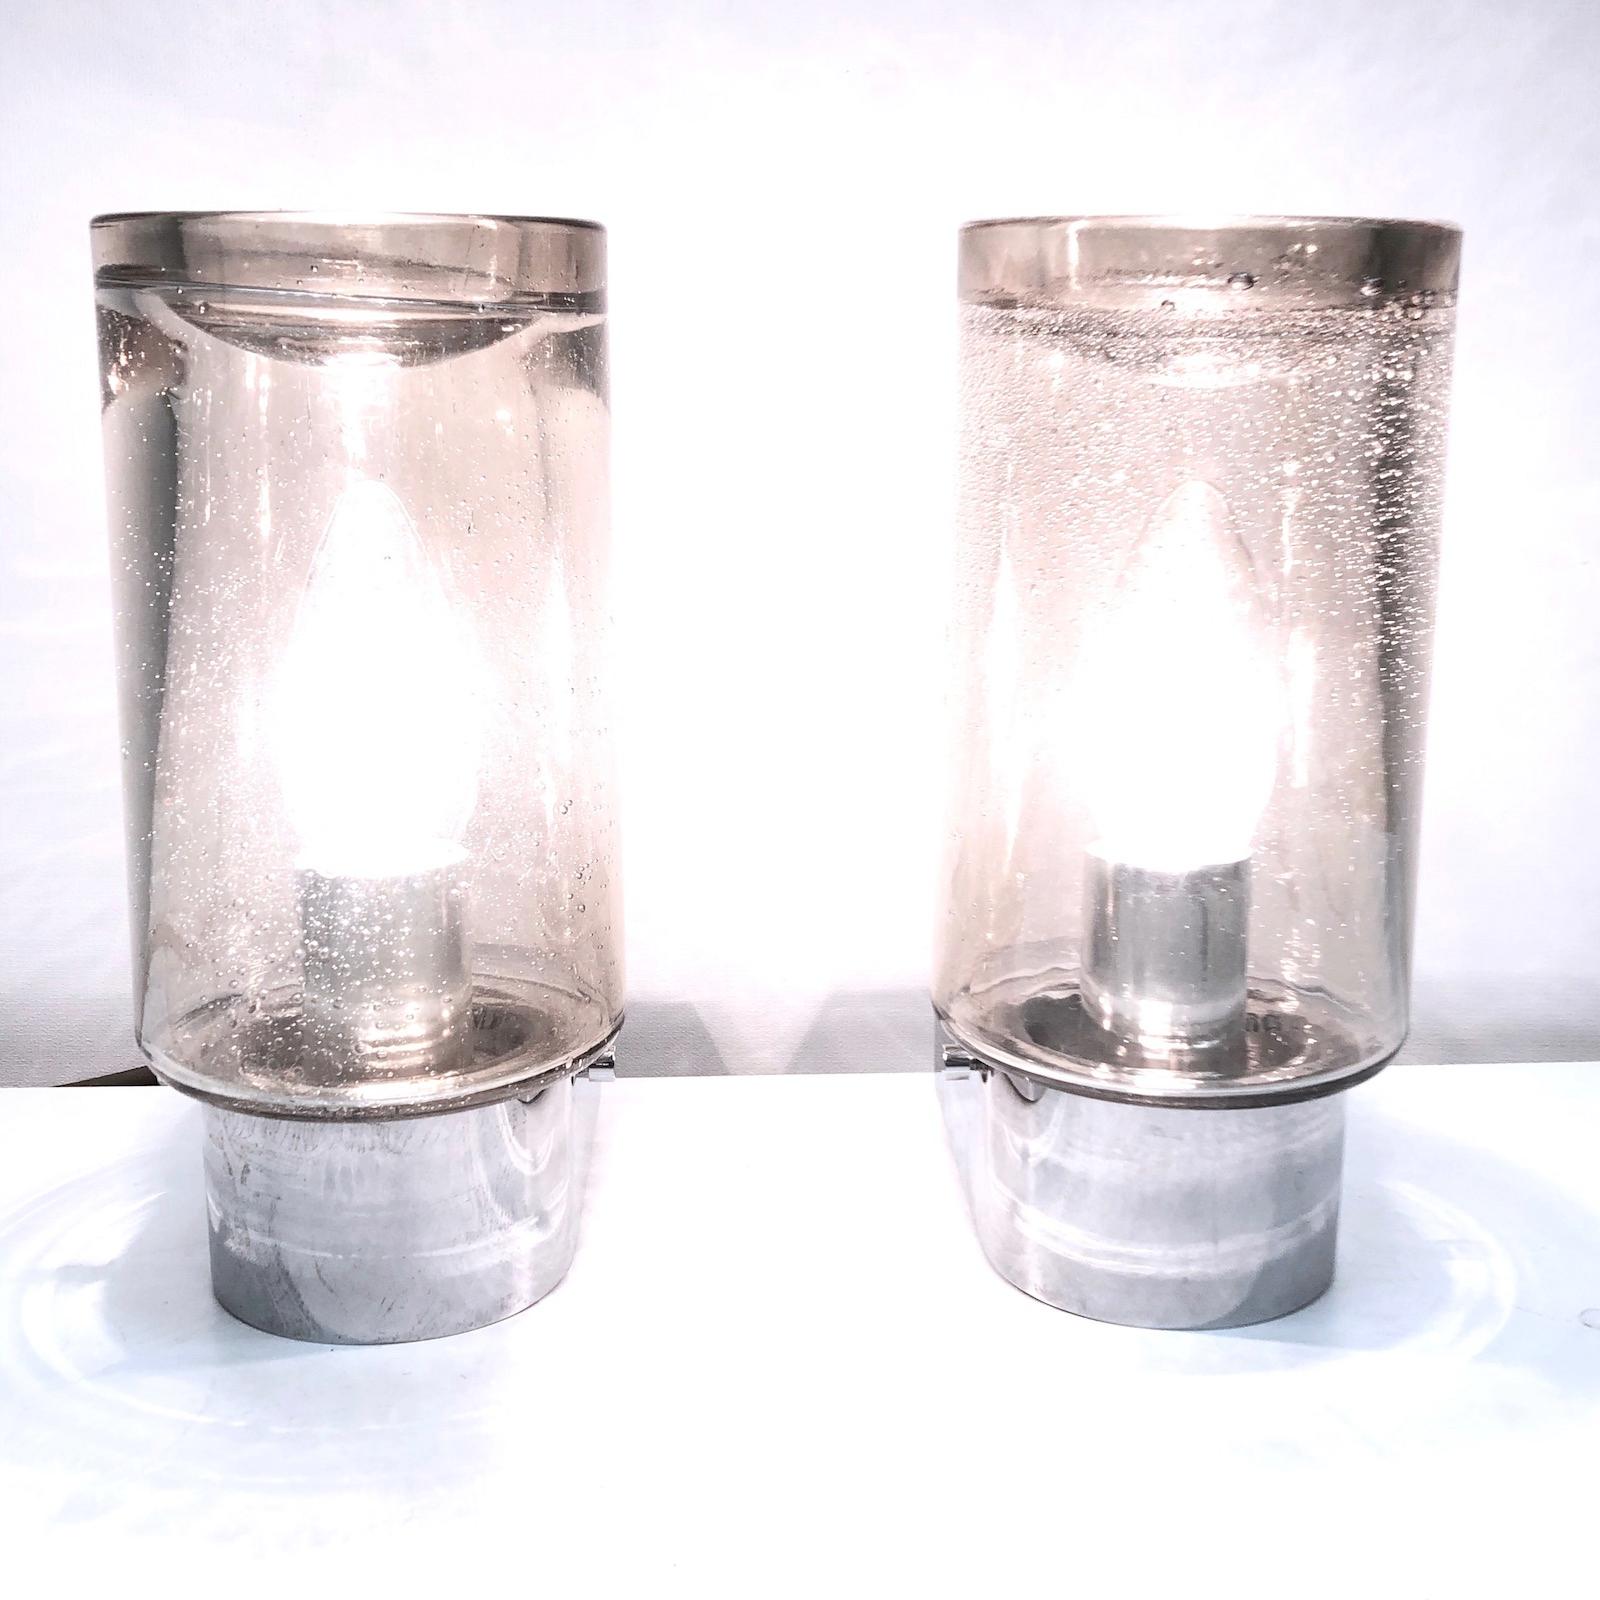 Kleine Wandleuchter, hergestellt von Glashütte Limburg. Es handelt sich um ein rauchfarbenes Glas auf einem verchromten Metallrahmen. Jede Leuchte benötigt eine europäische E14 / 110 Volt Kandelaberlampe, jede Lampe bis zu 40 Watt.